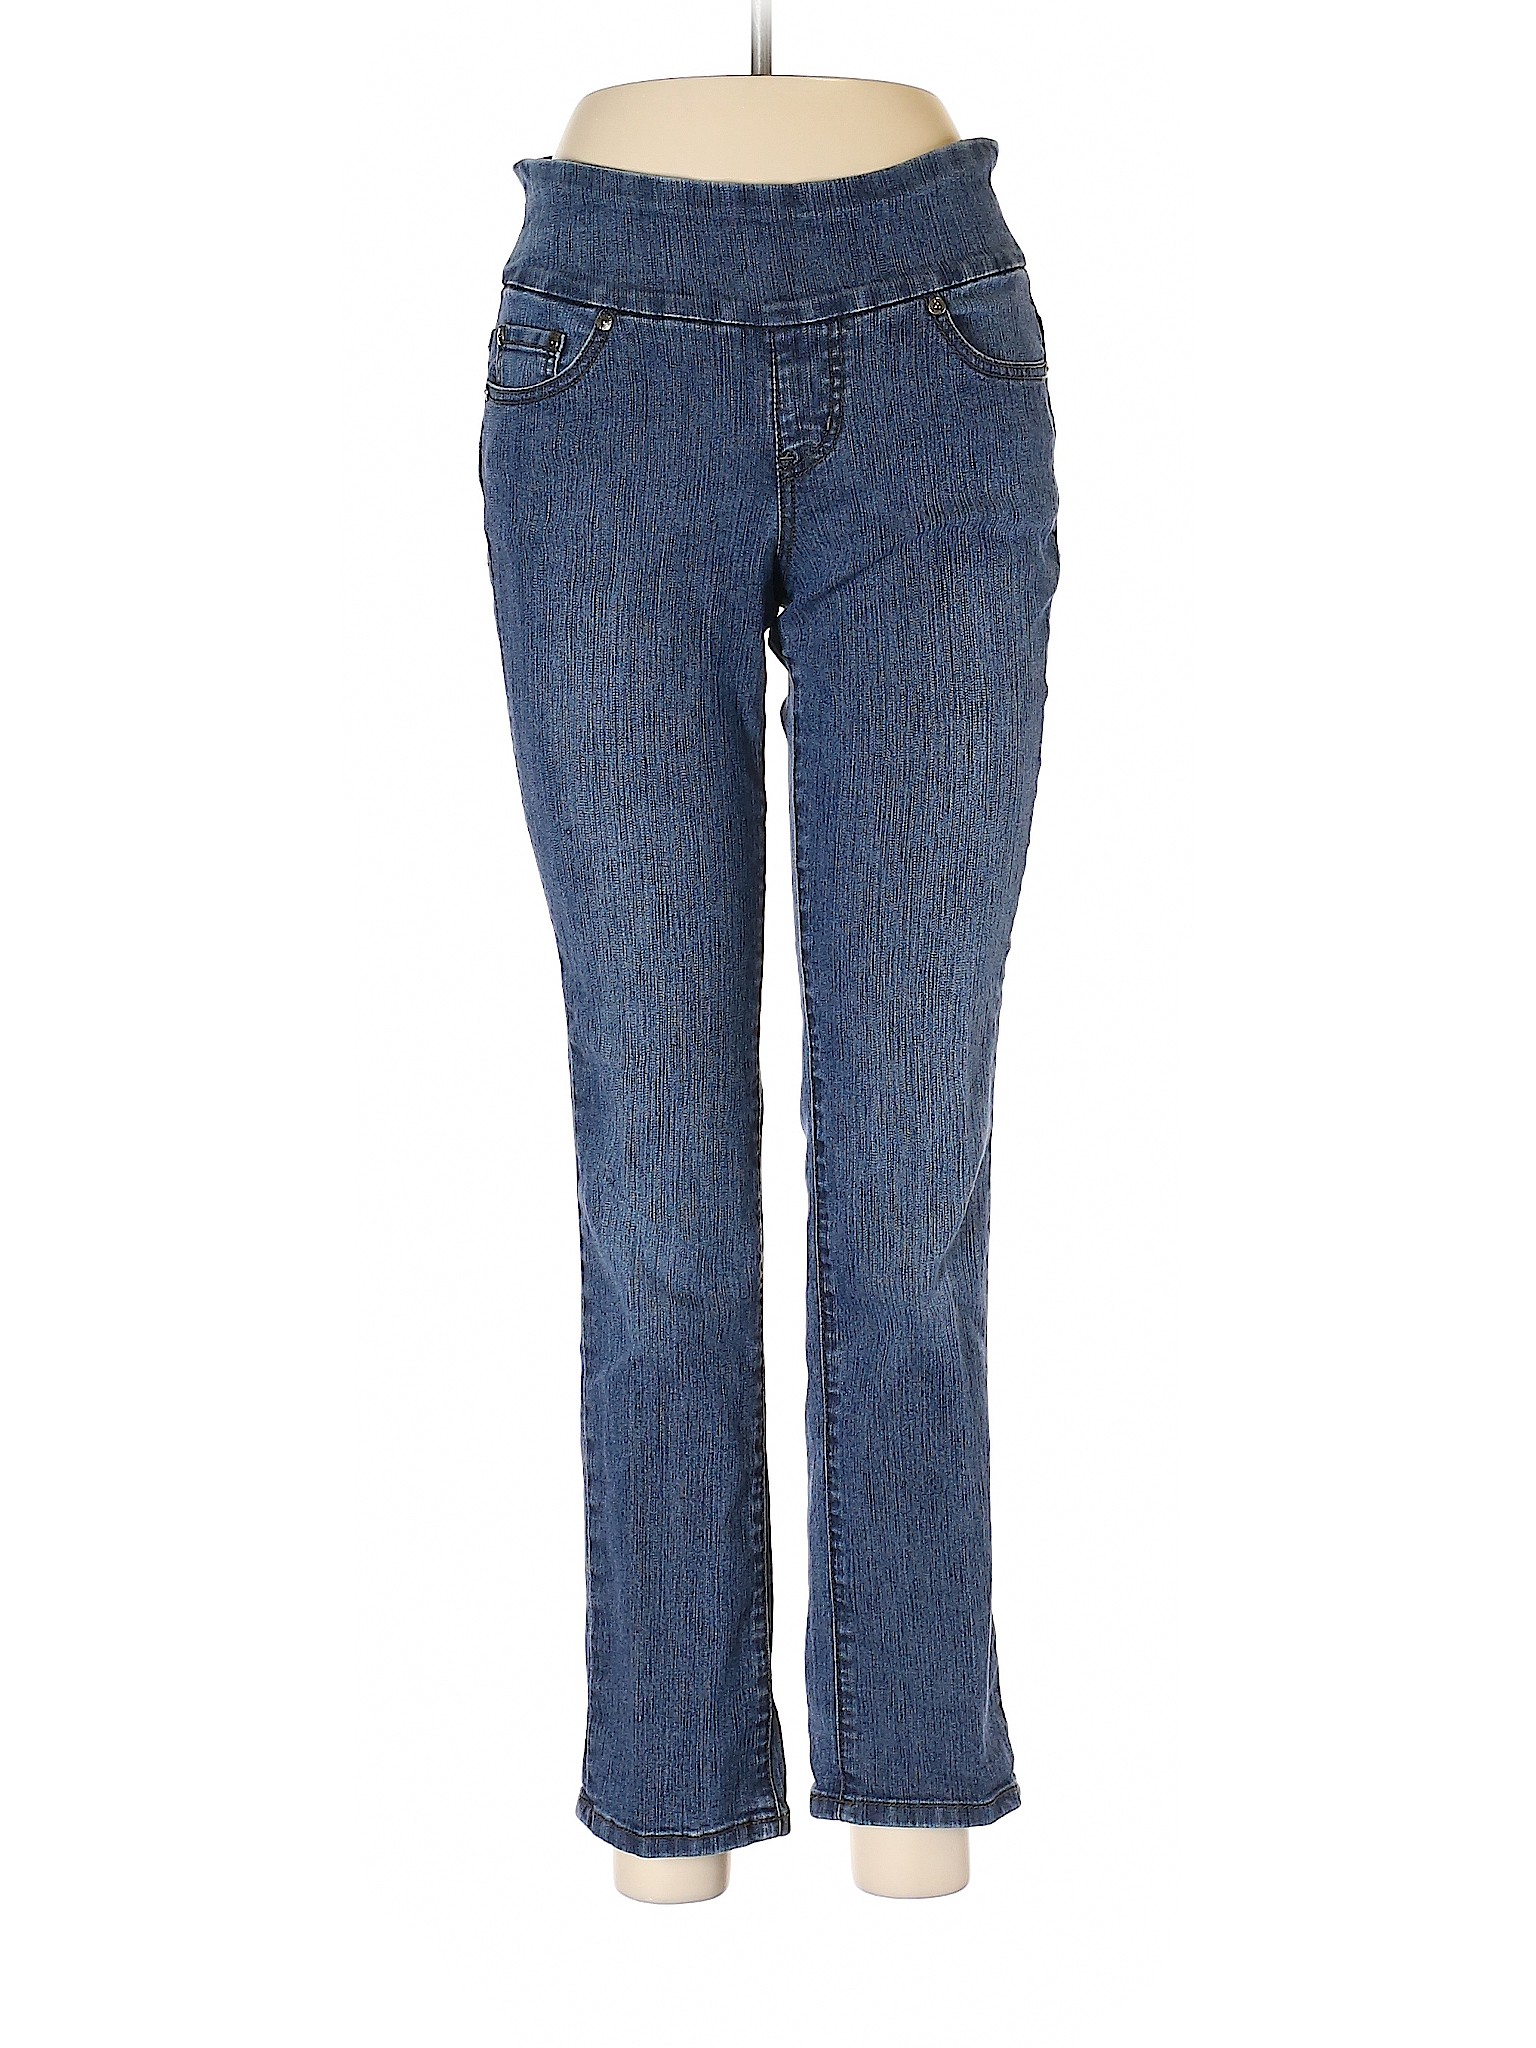 Details about Jag Jeans Women Blue Casual Pants 4 Petite